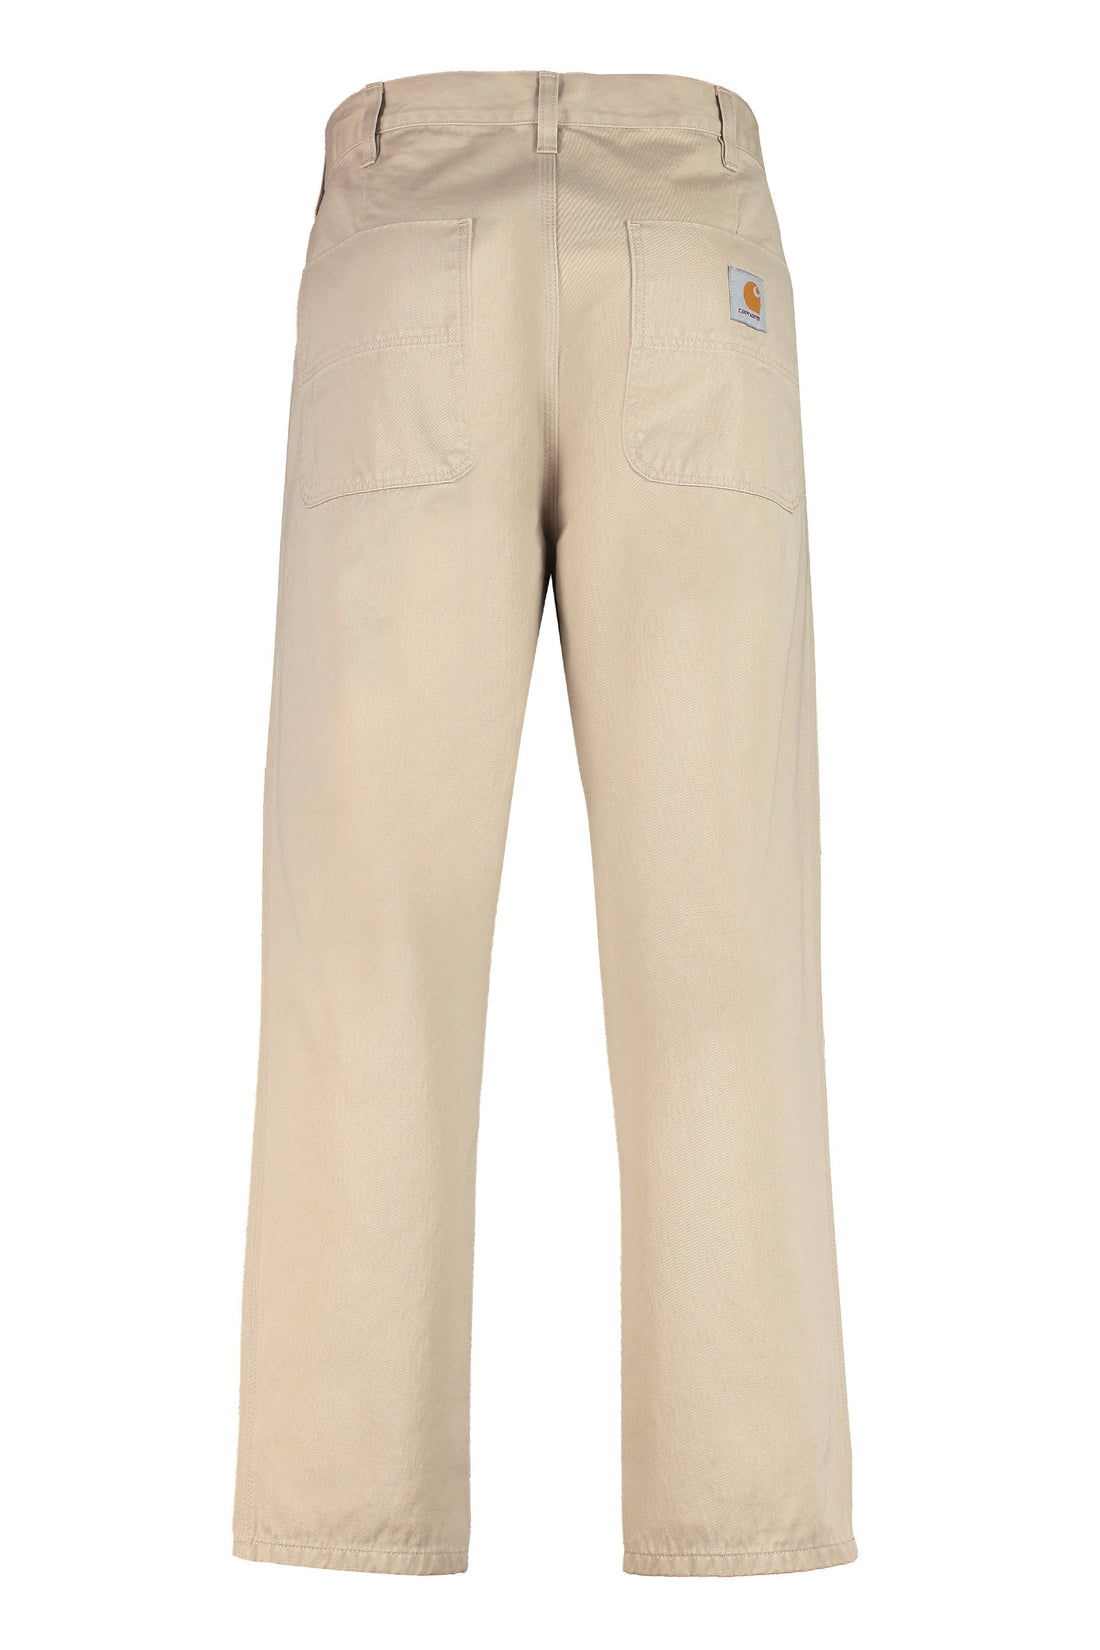 Carhartt-OUTLET-SALE-Abbott cotton trousers-ARCHIVIST